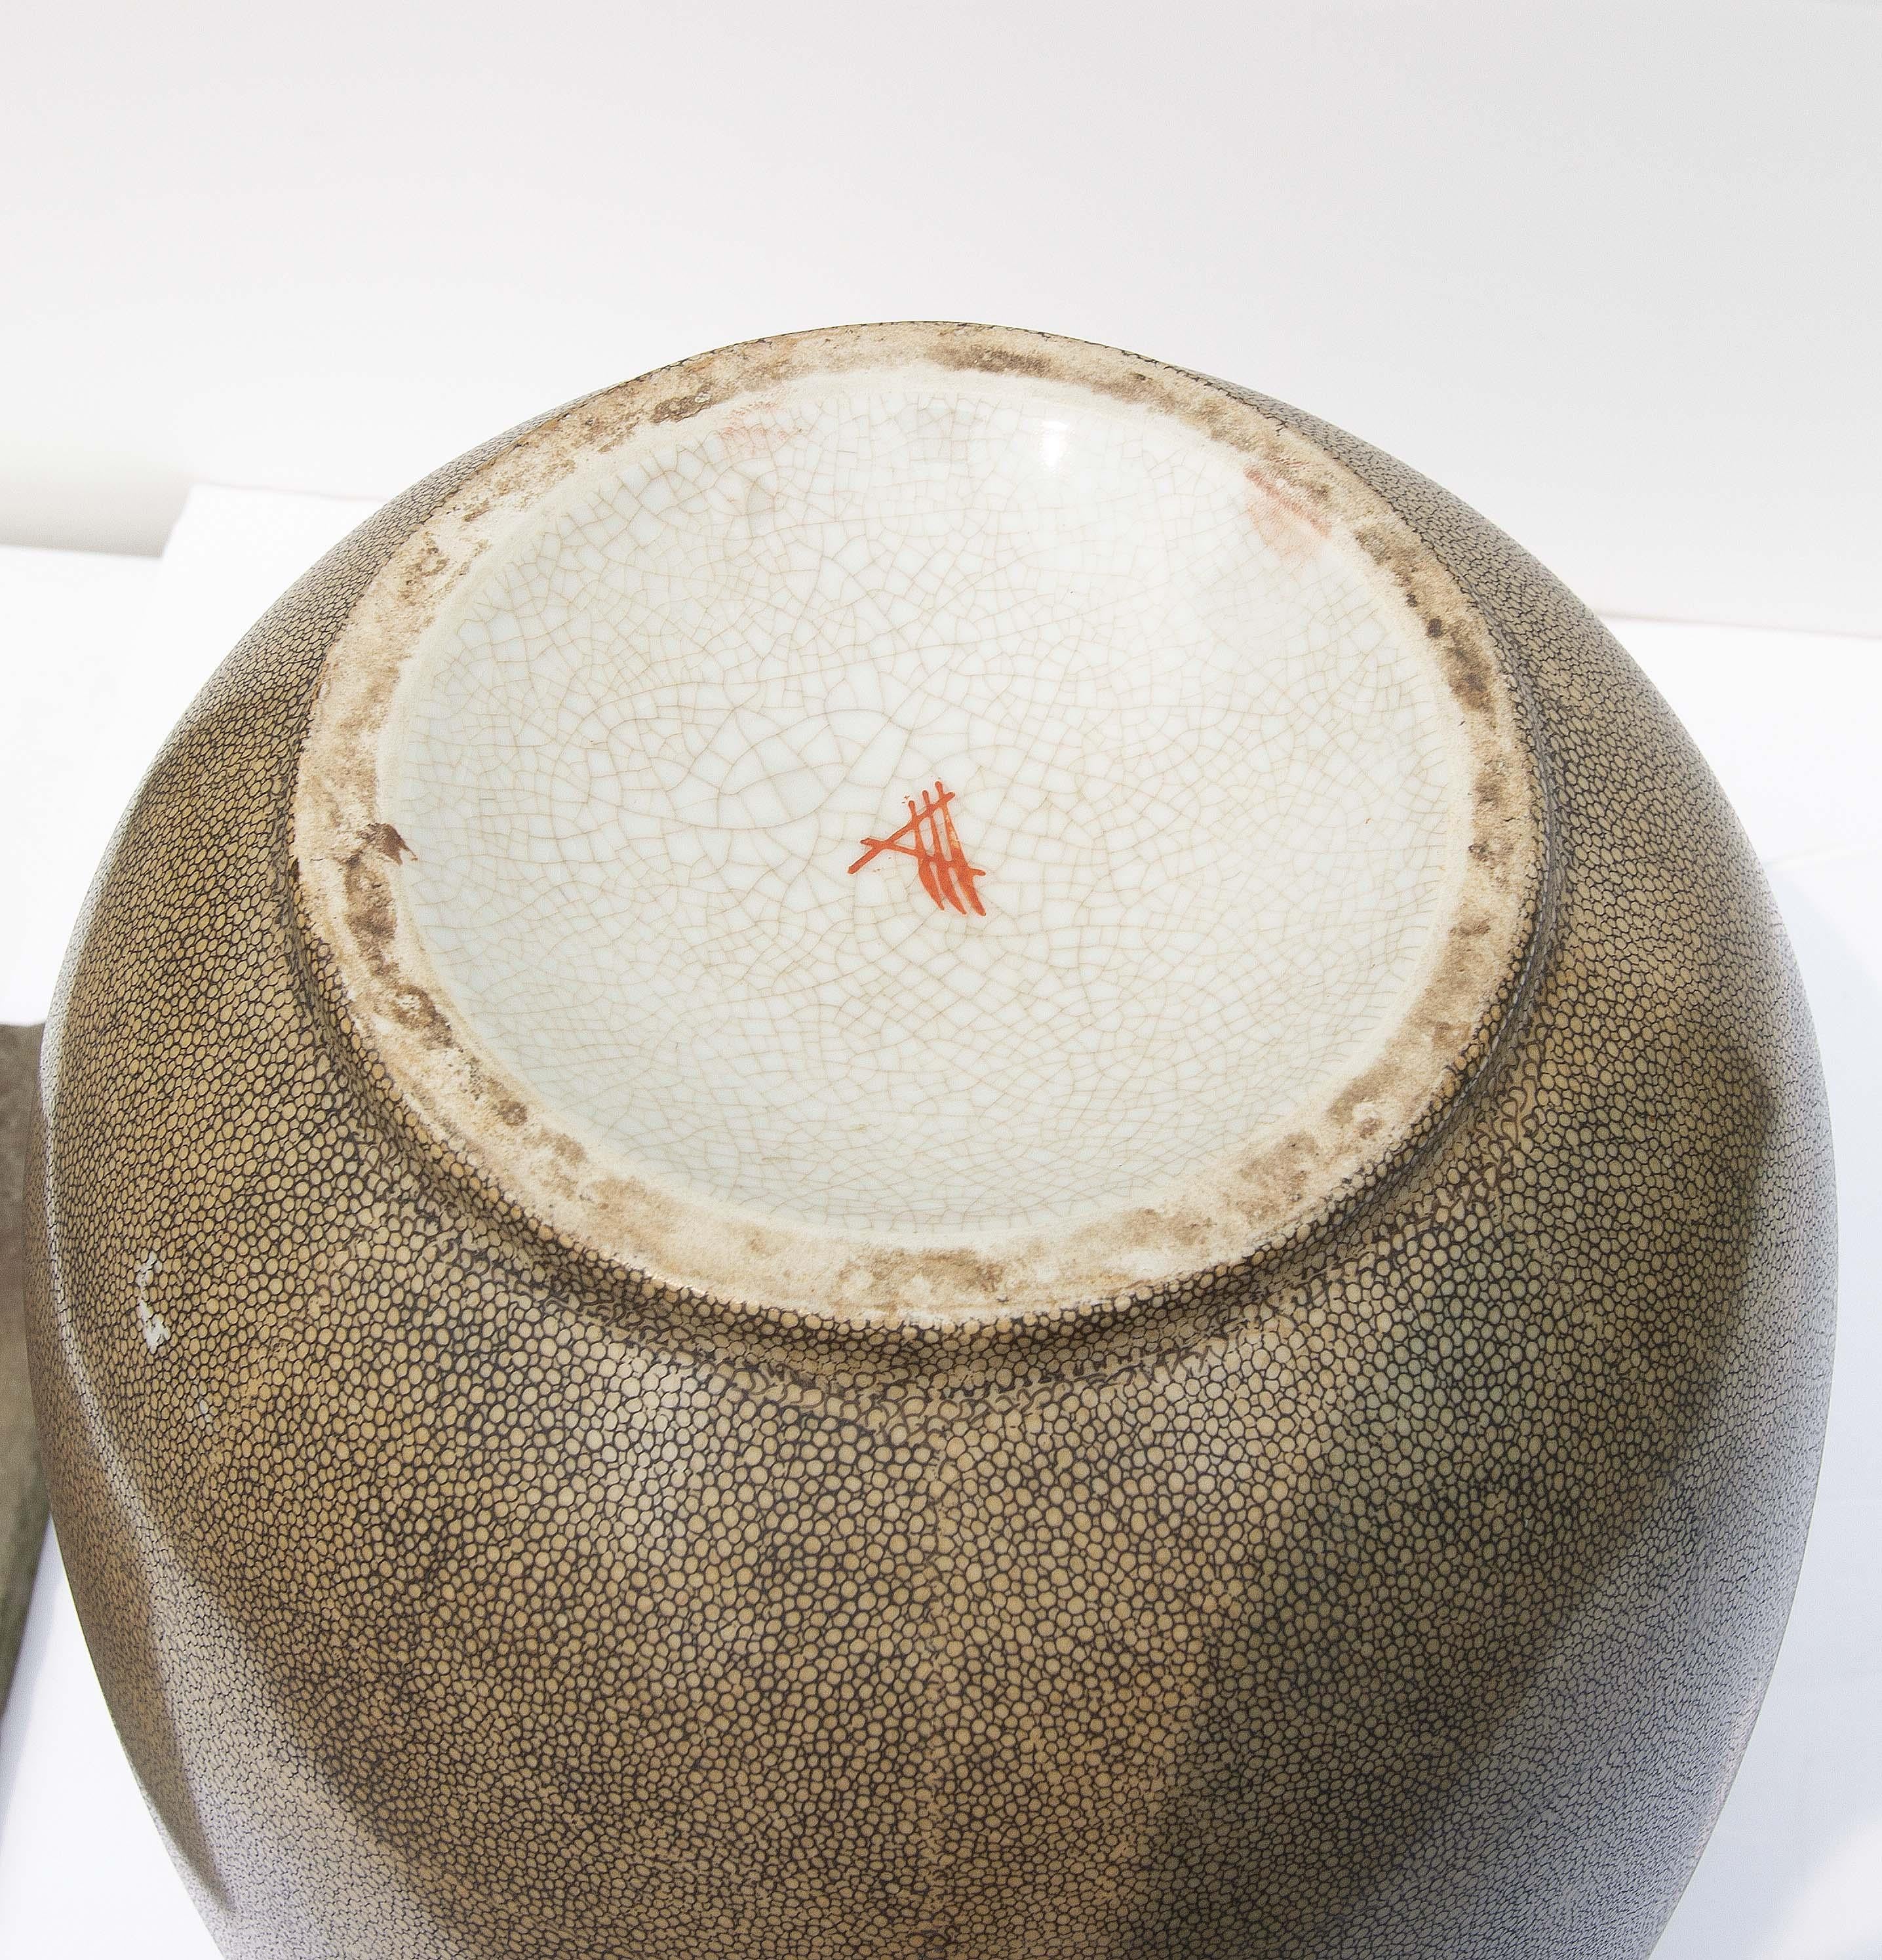 Jarrón de cerámica asiática con esmalte de color rojizo. También se puede utilizar como pie de lámpara.